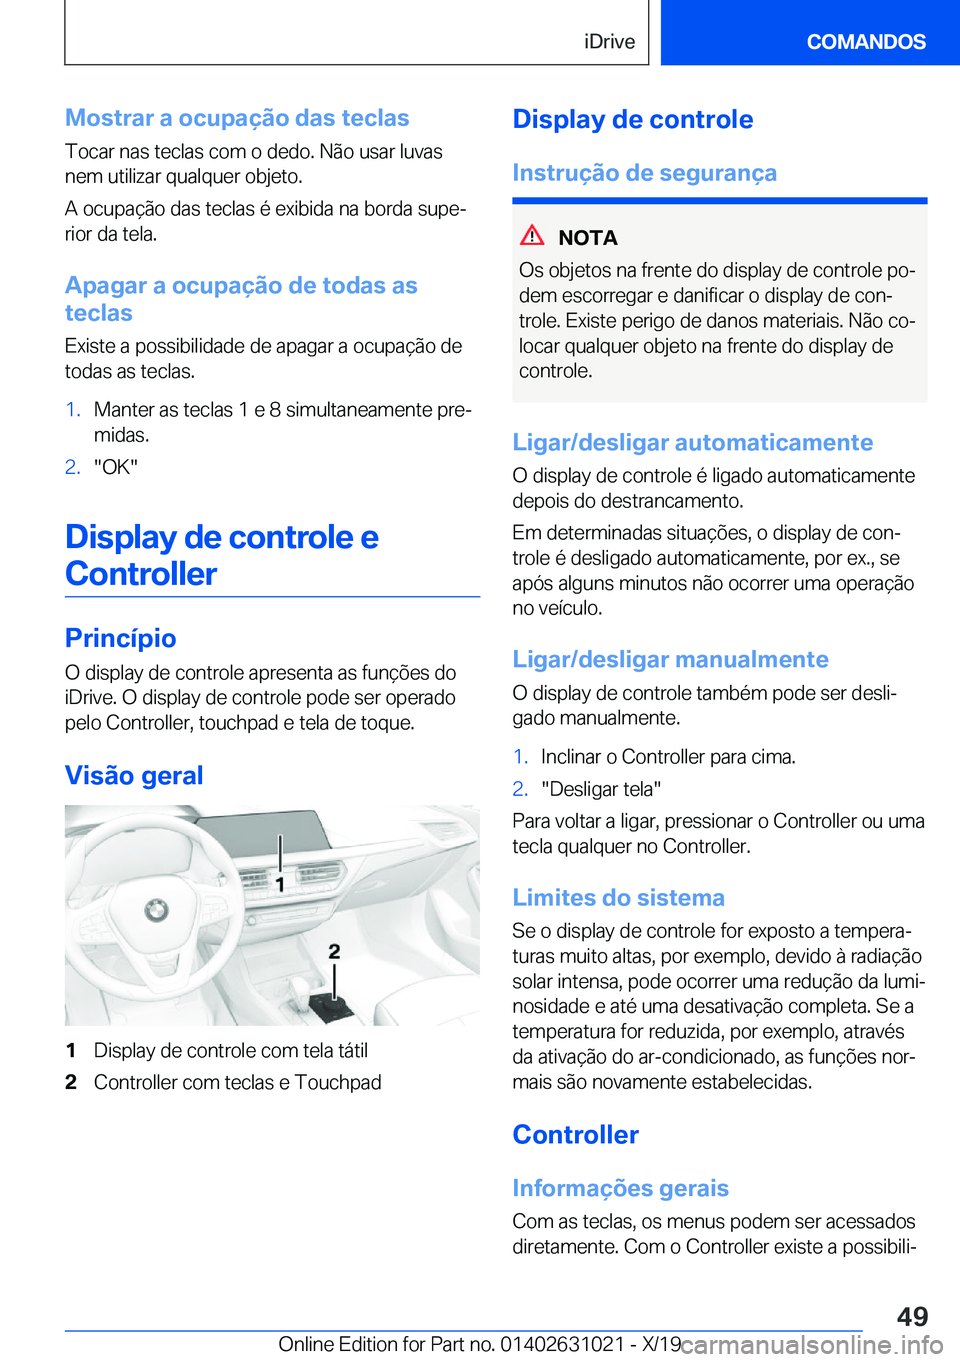 BMW 2 SERIES GRAN COUPE 2020  Manual do condutor (in Portuguese) �M�o�s�t�r�a�r��a��o�c�u�p�a�